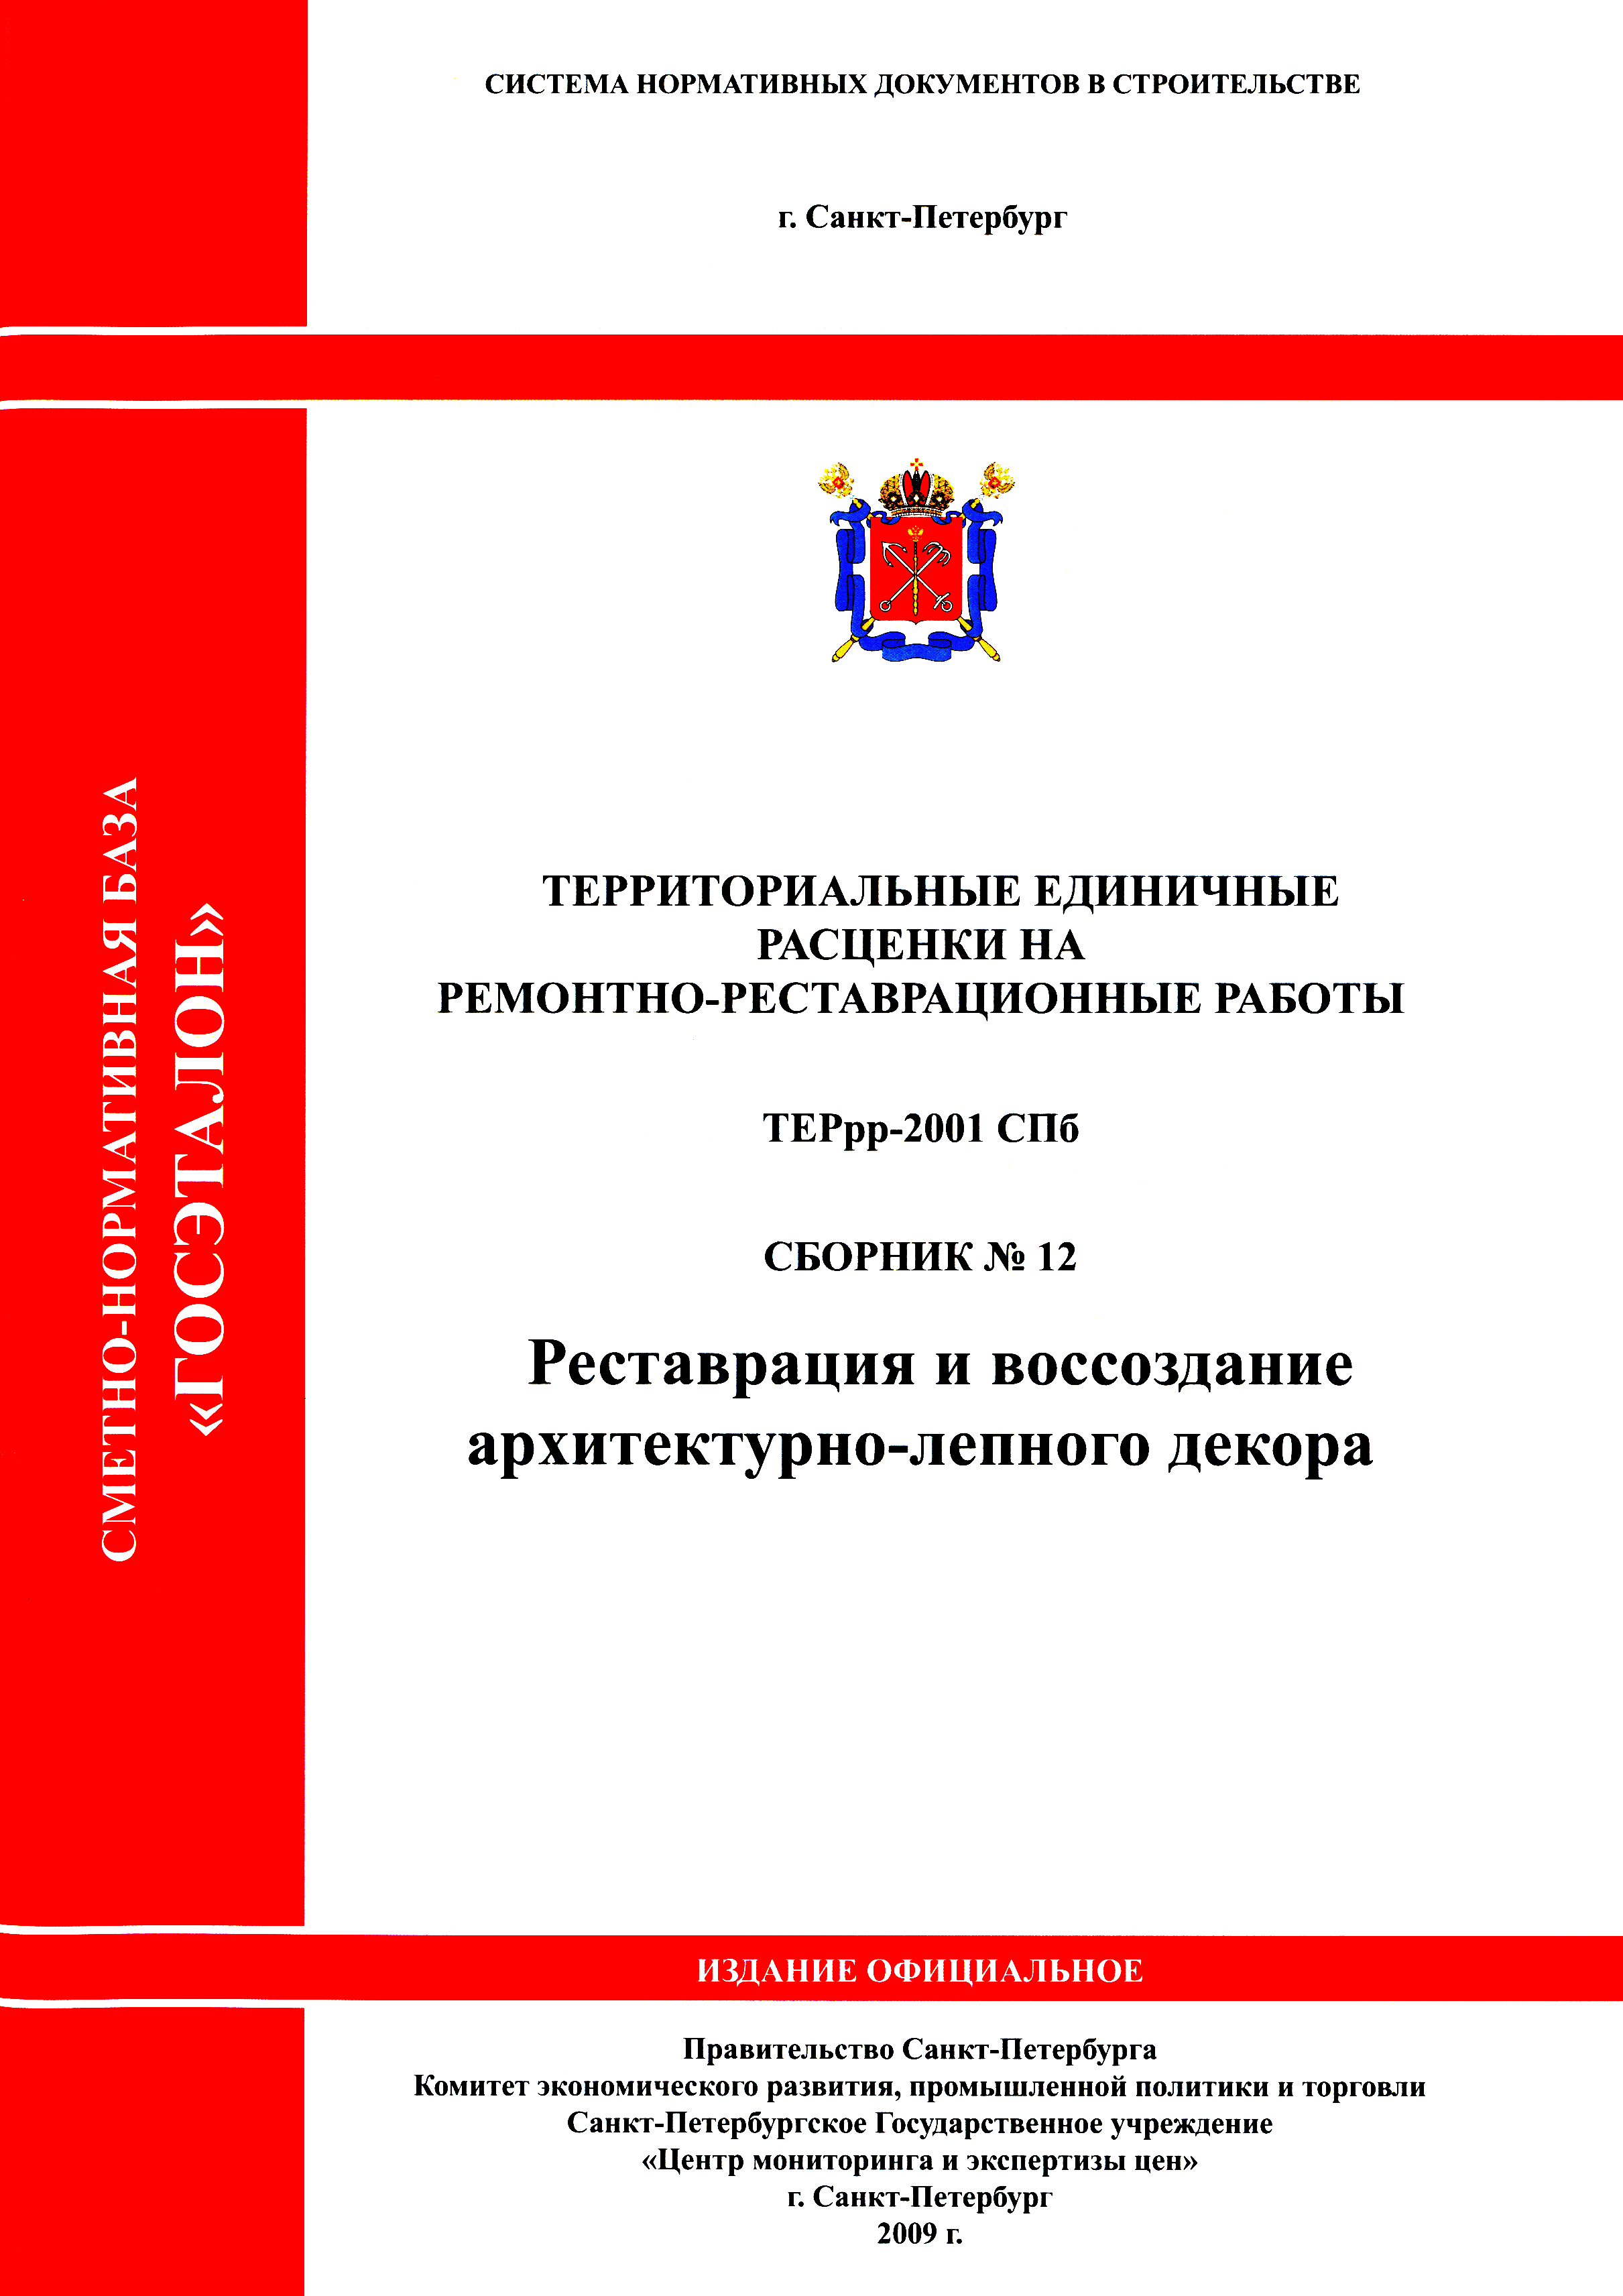 ТЕРрр 2001-12 СПб